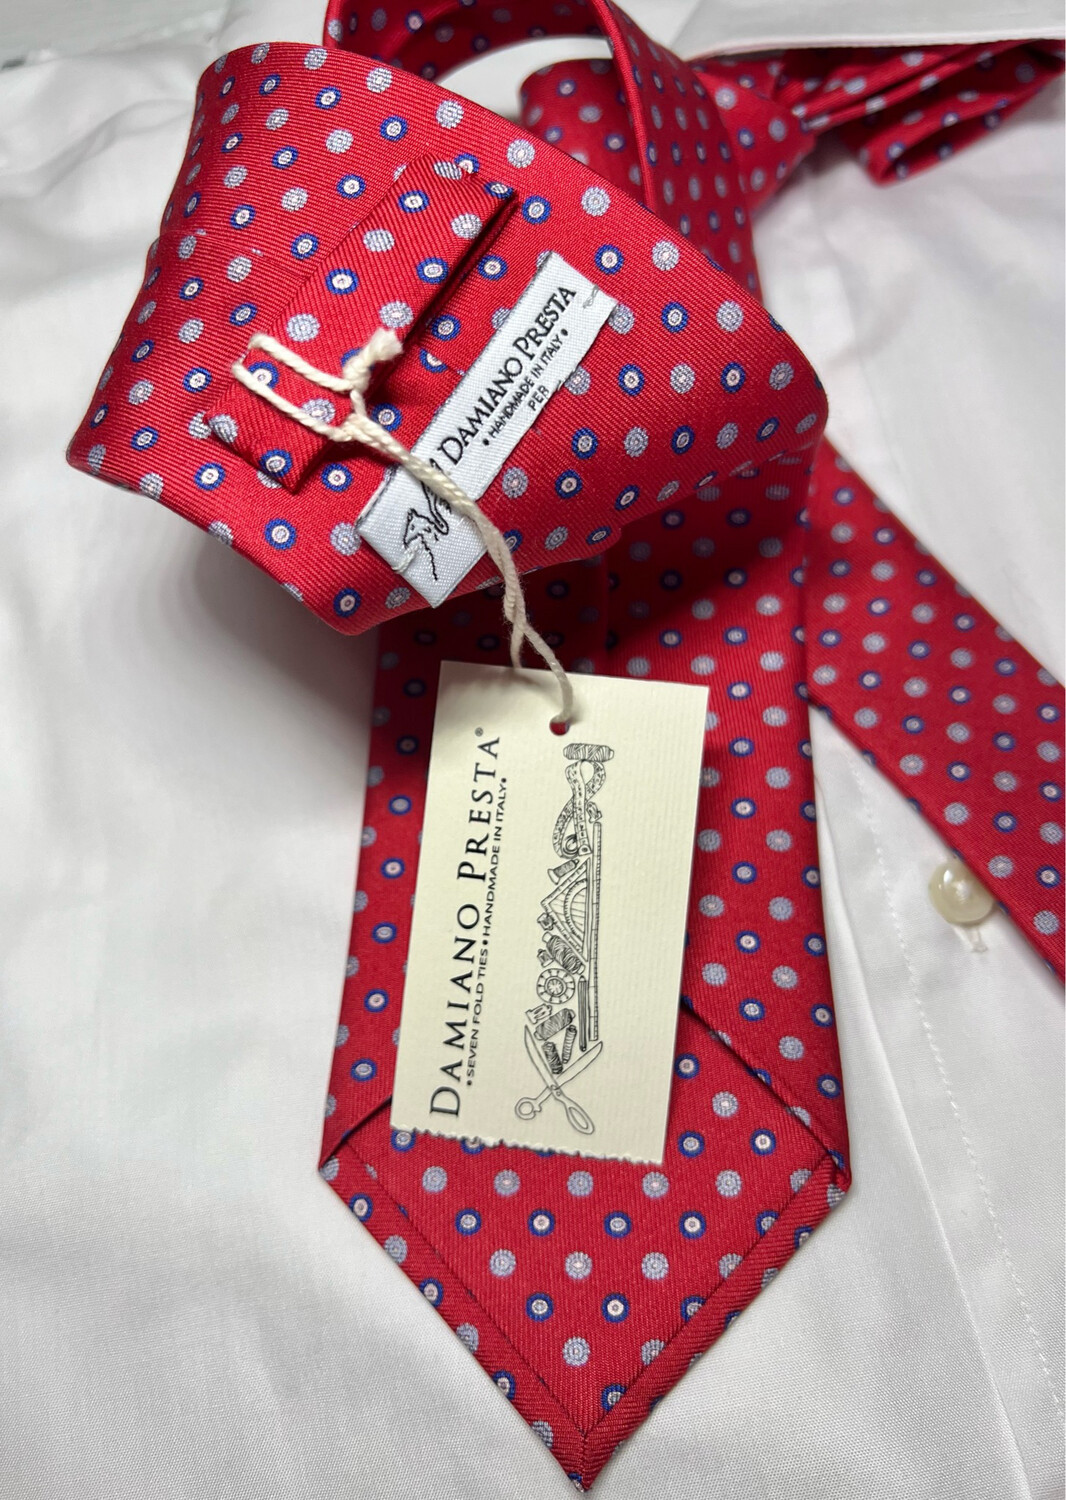 Cravatta Damiano Presta nuova scatolata seta 100% rossa microfantasia 7,5 cm